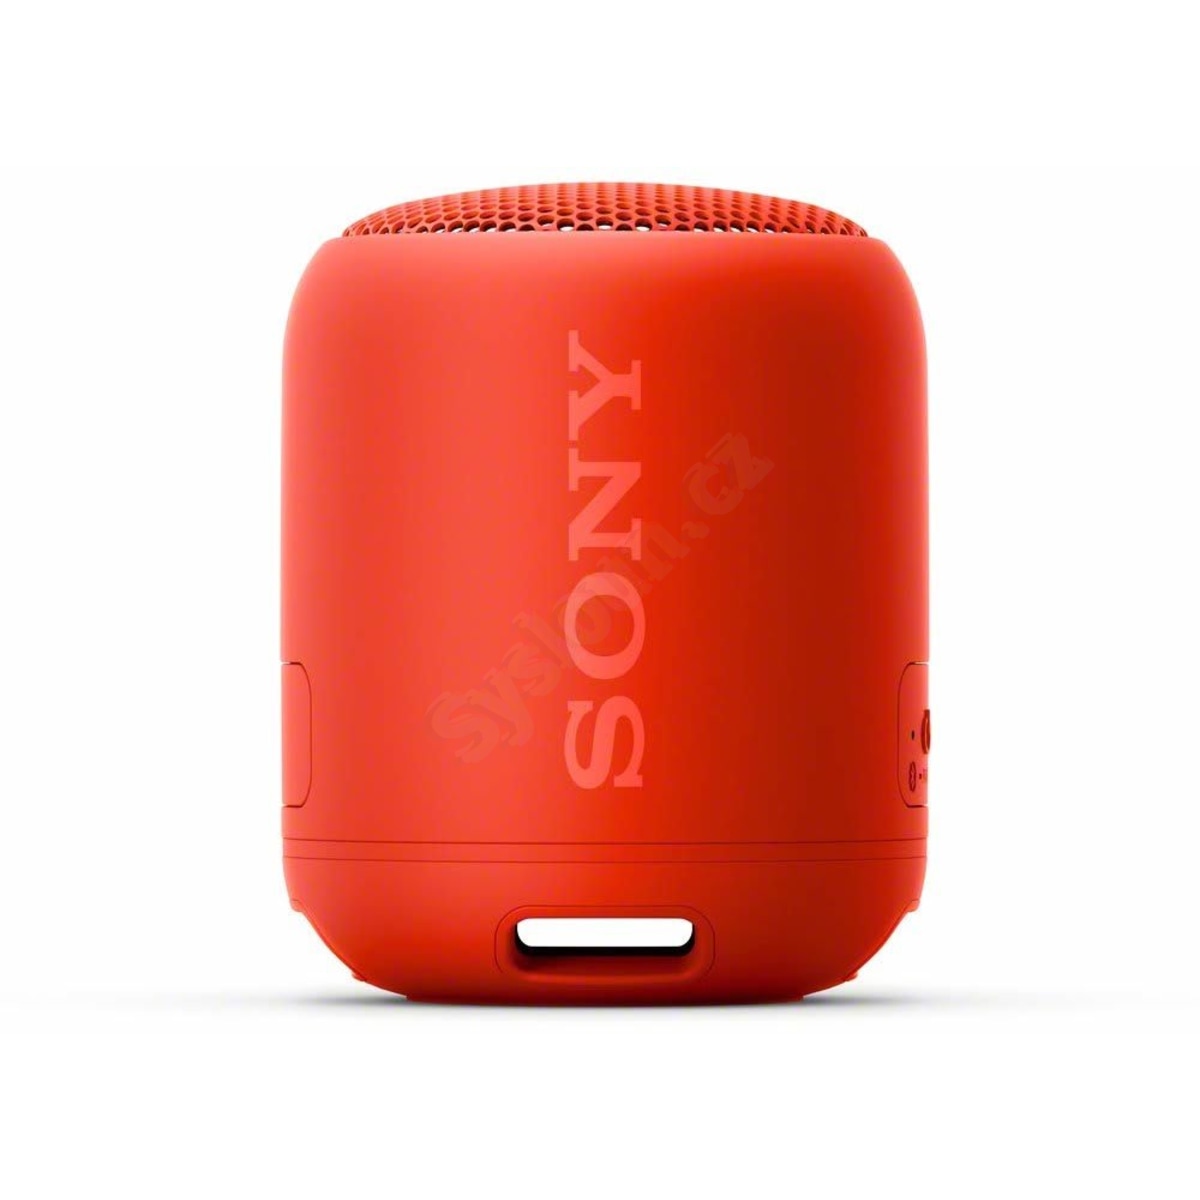 Sony SRS-XB12